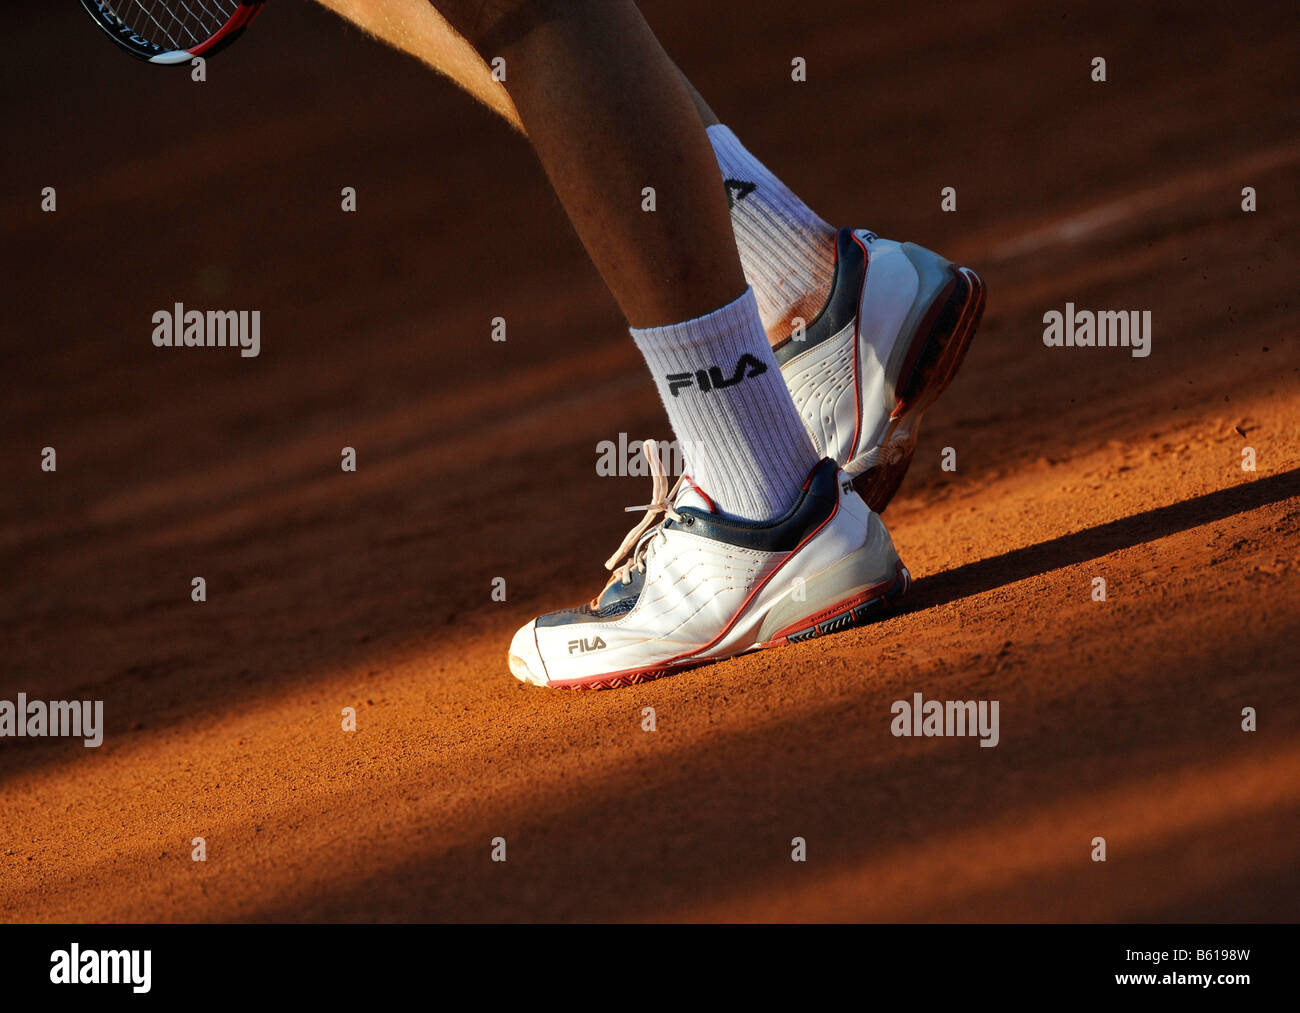 Détail, les jambes d'un joueur de tennis chaussettes FILA portant sur un court de tennis Banque D'Images